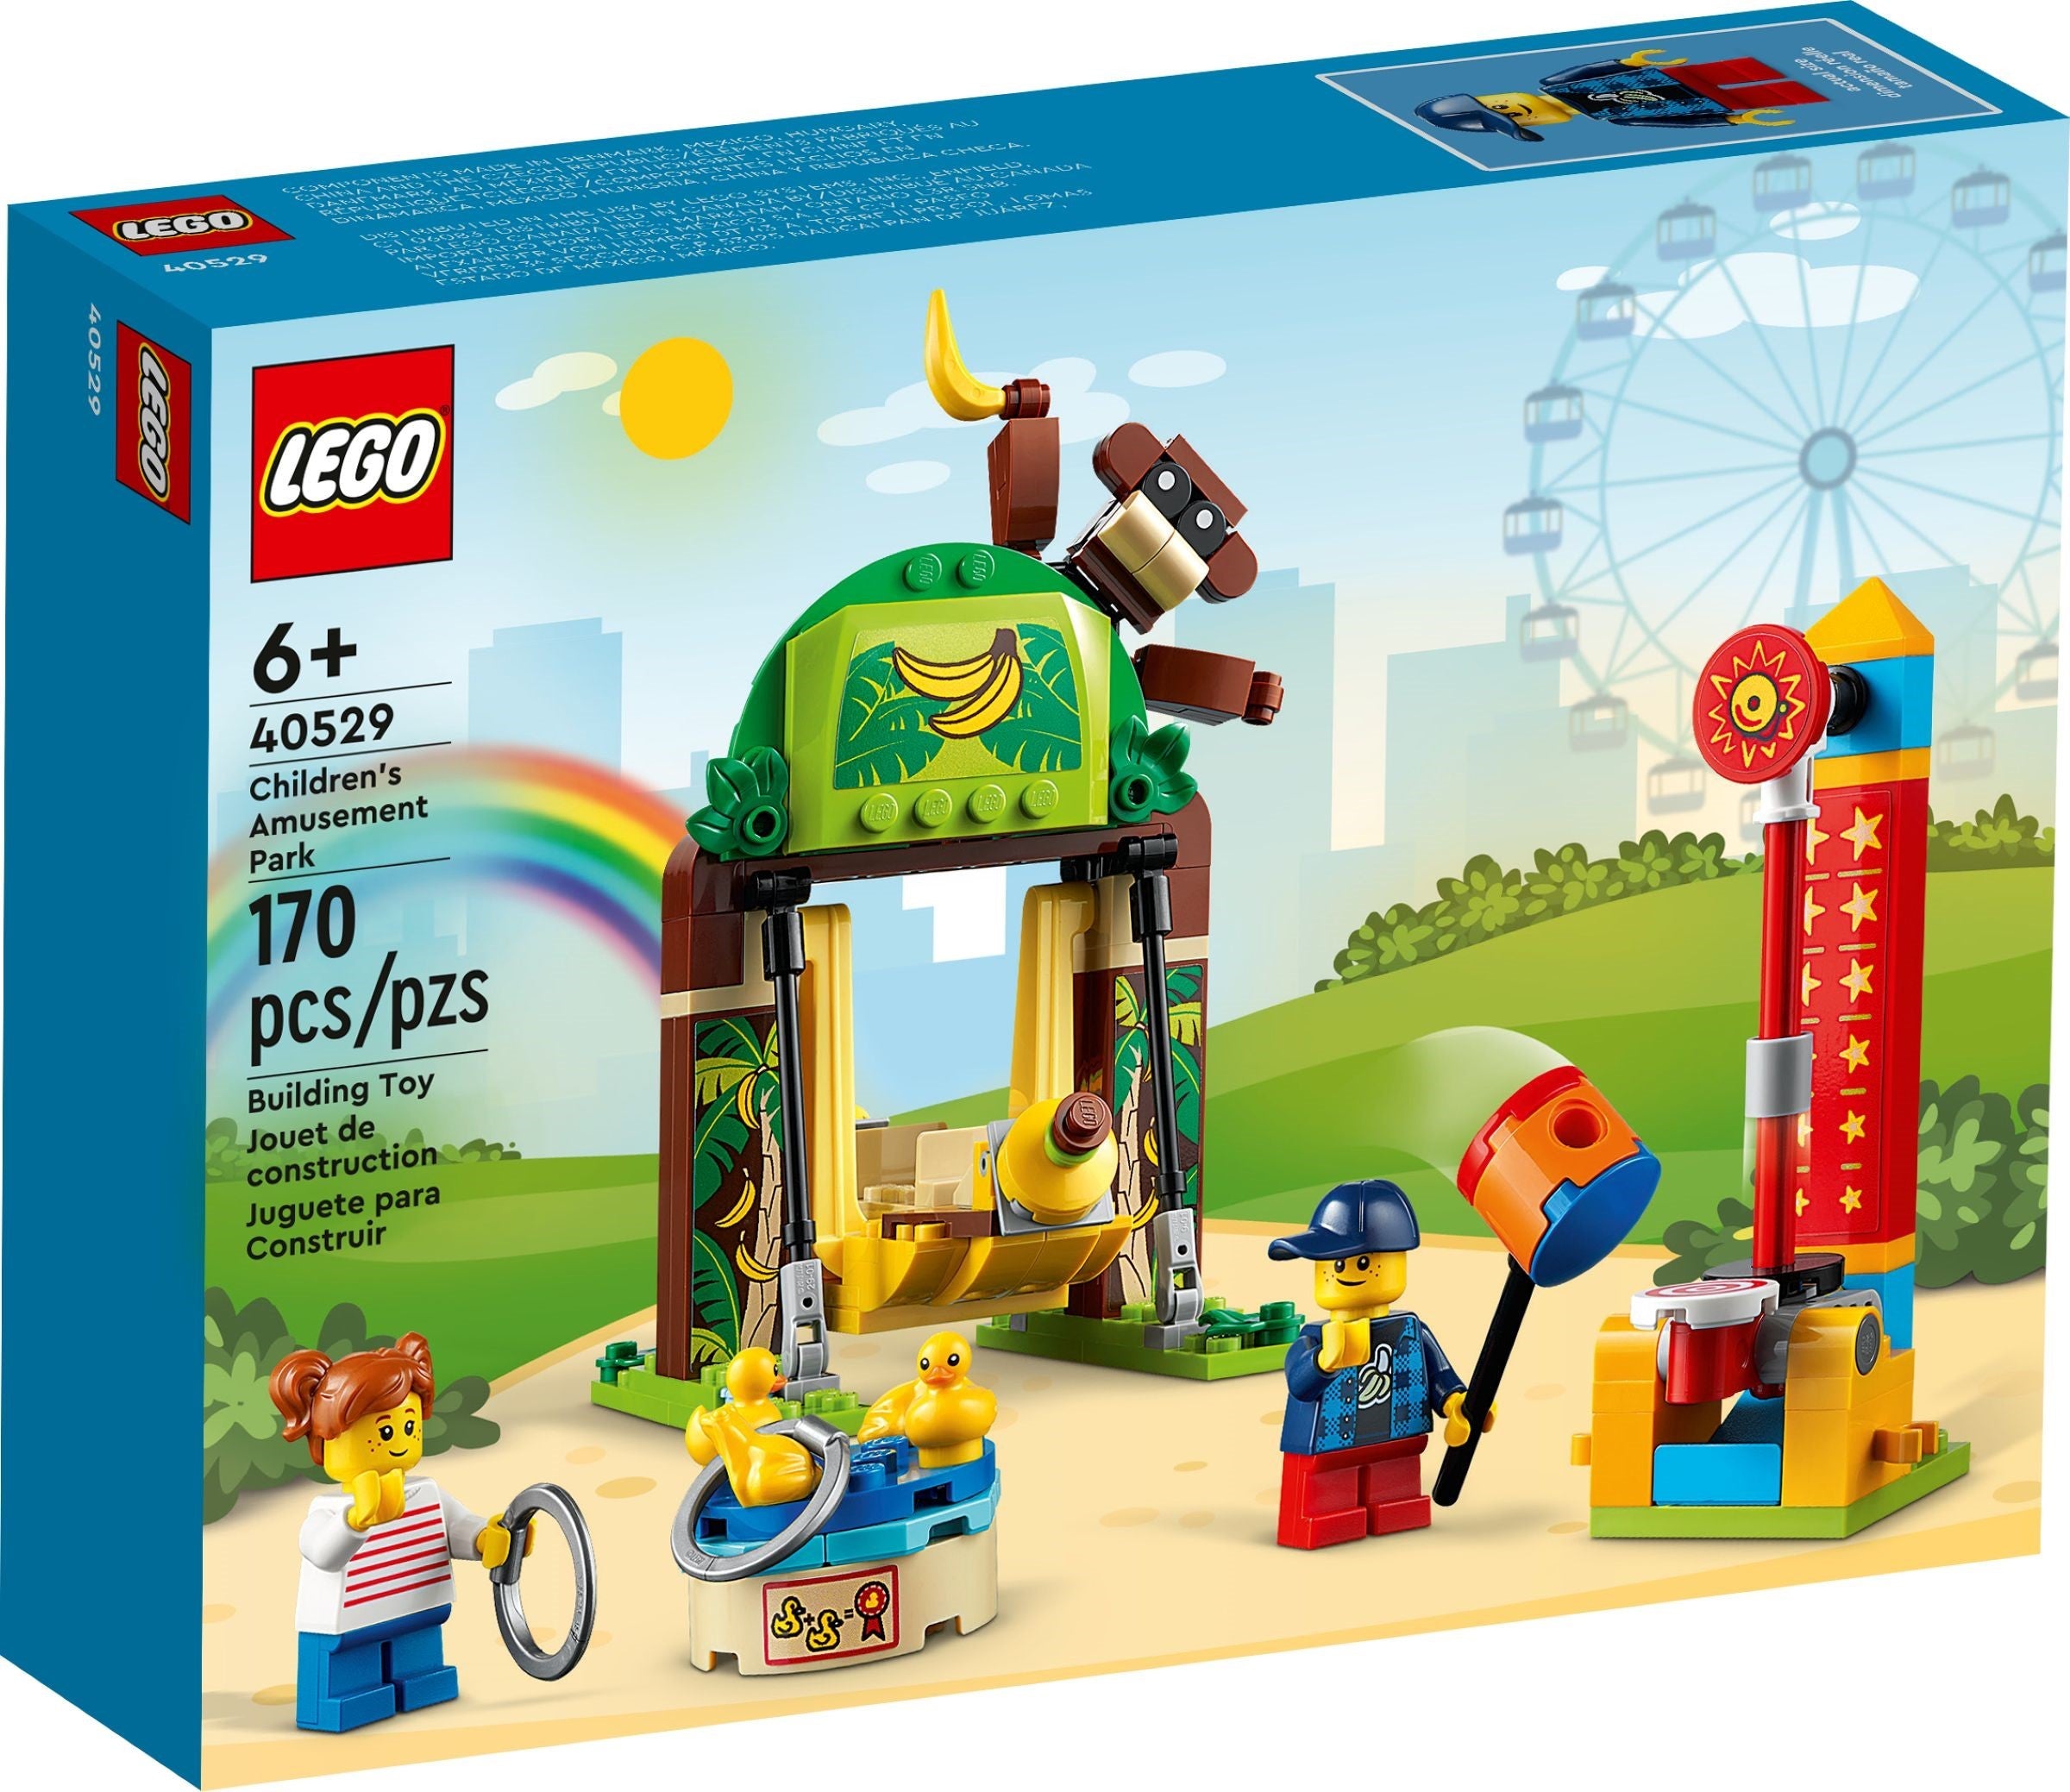 Lego Exclusive 40529 - Children's Amusement Park